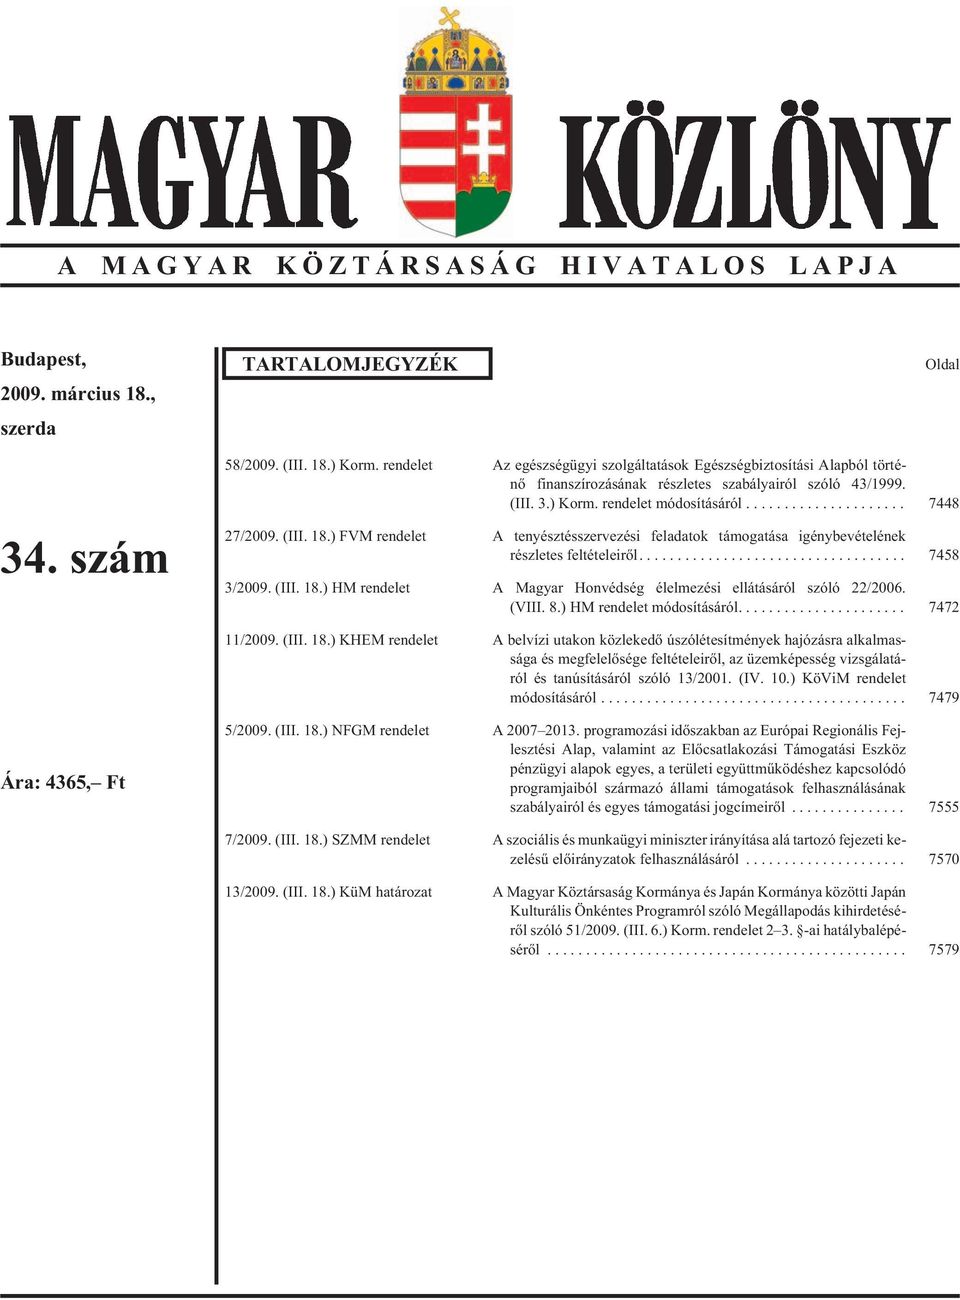 ) FVM rendelet A tenyésztésszervezési feladatok támogatása igénybevételének részletes feltételeirõl.... 7458 3/2009. (III. 18.) HM rendelet A Magyar Honvédség élelmezési ellátásáról szóló 22/2006.